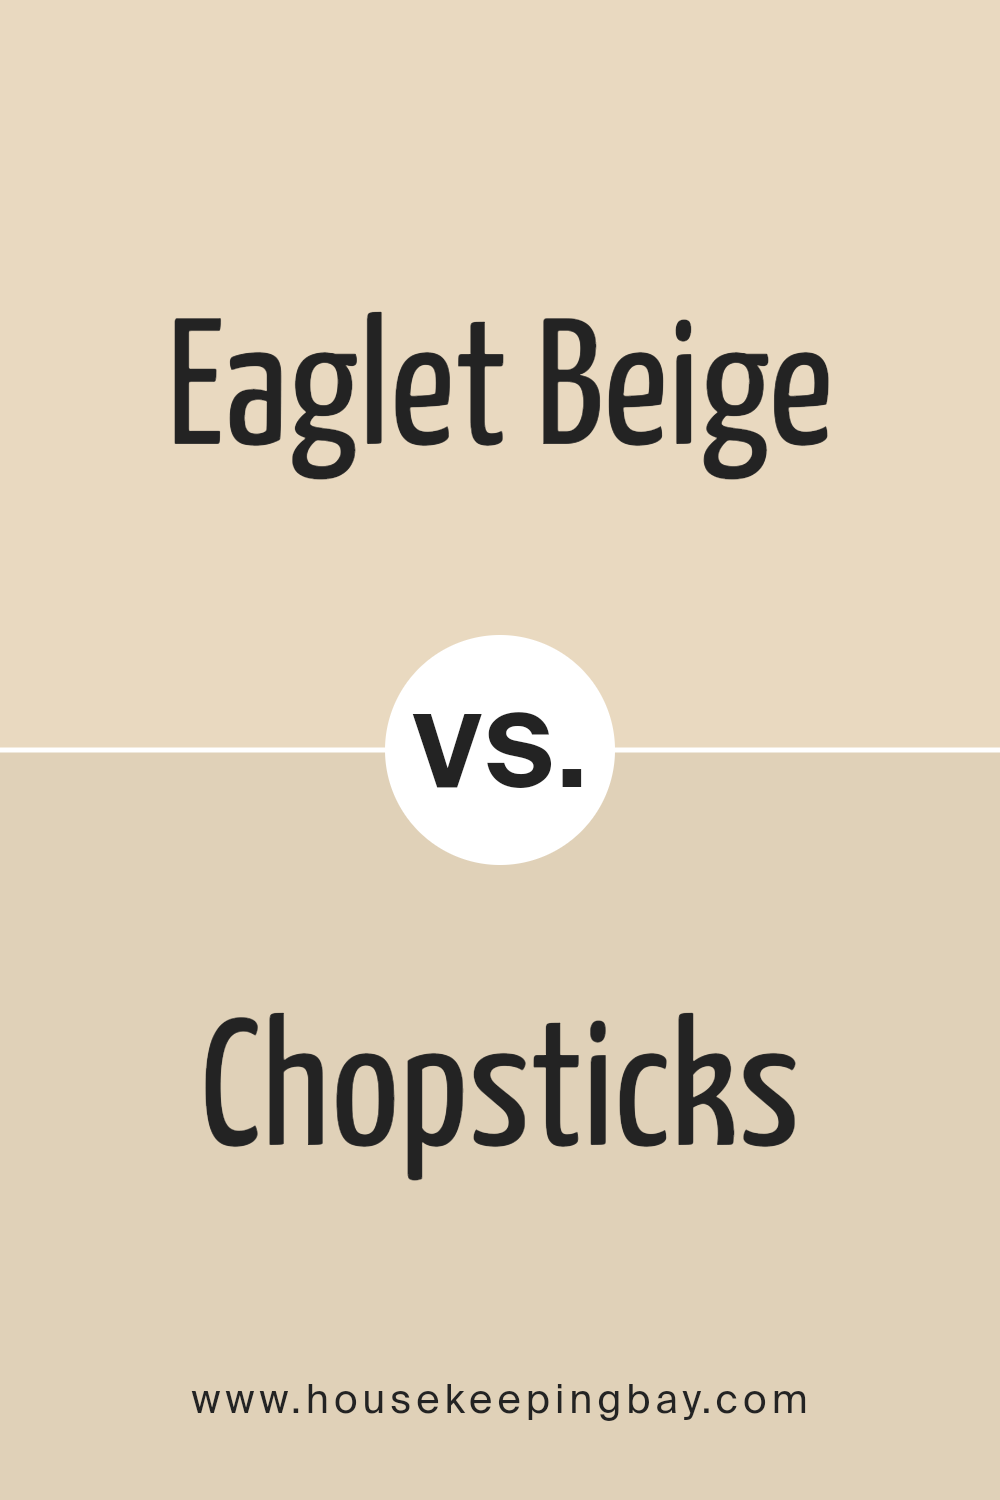 eaglet_beige_sw_7573_vs_chopsticks_sw_7575